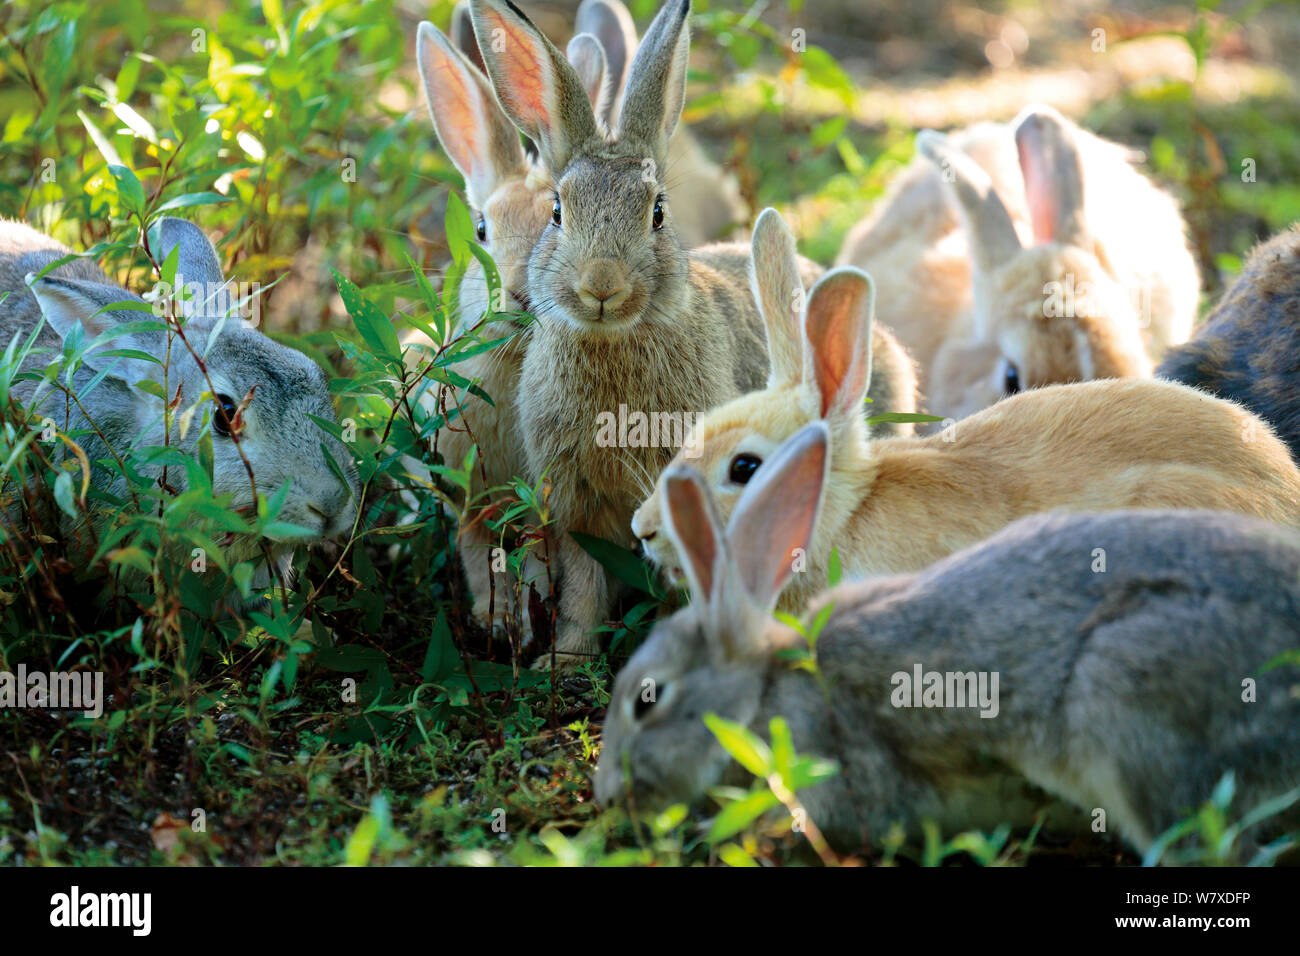 La population de lapins domestiques (Oryctolagus cuniculus), l'alimentation des groupes Okunojima Island, également connu sous le nom de Rabbit Island, Hiroshima, Japon. Banque D'Images